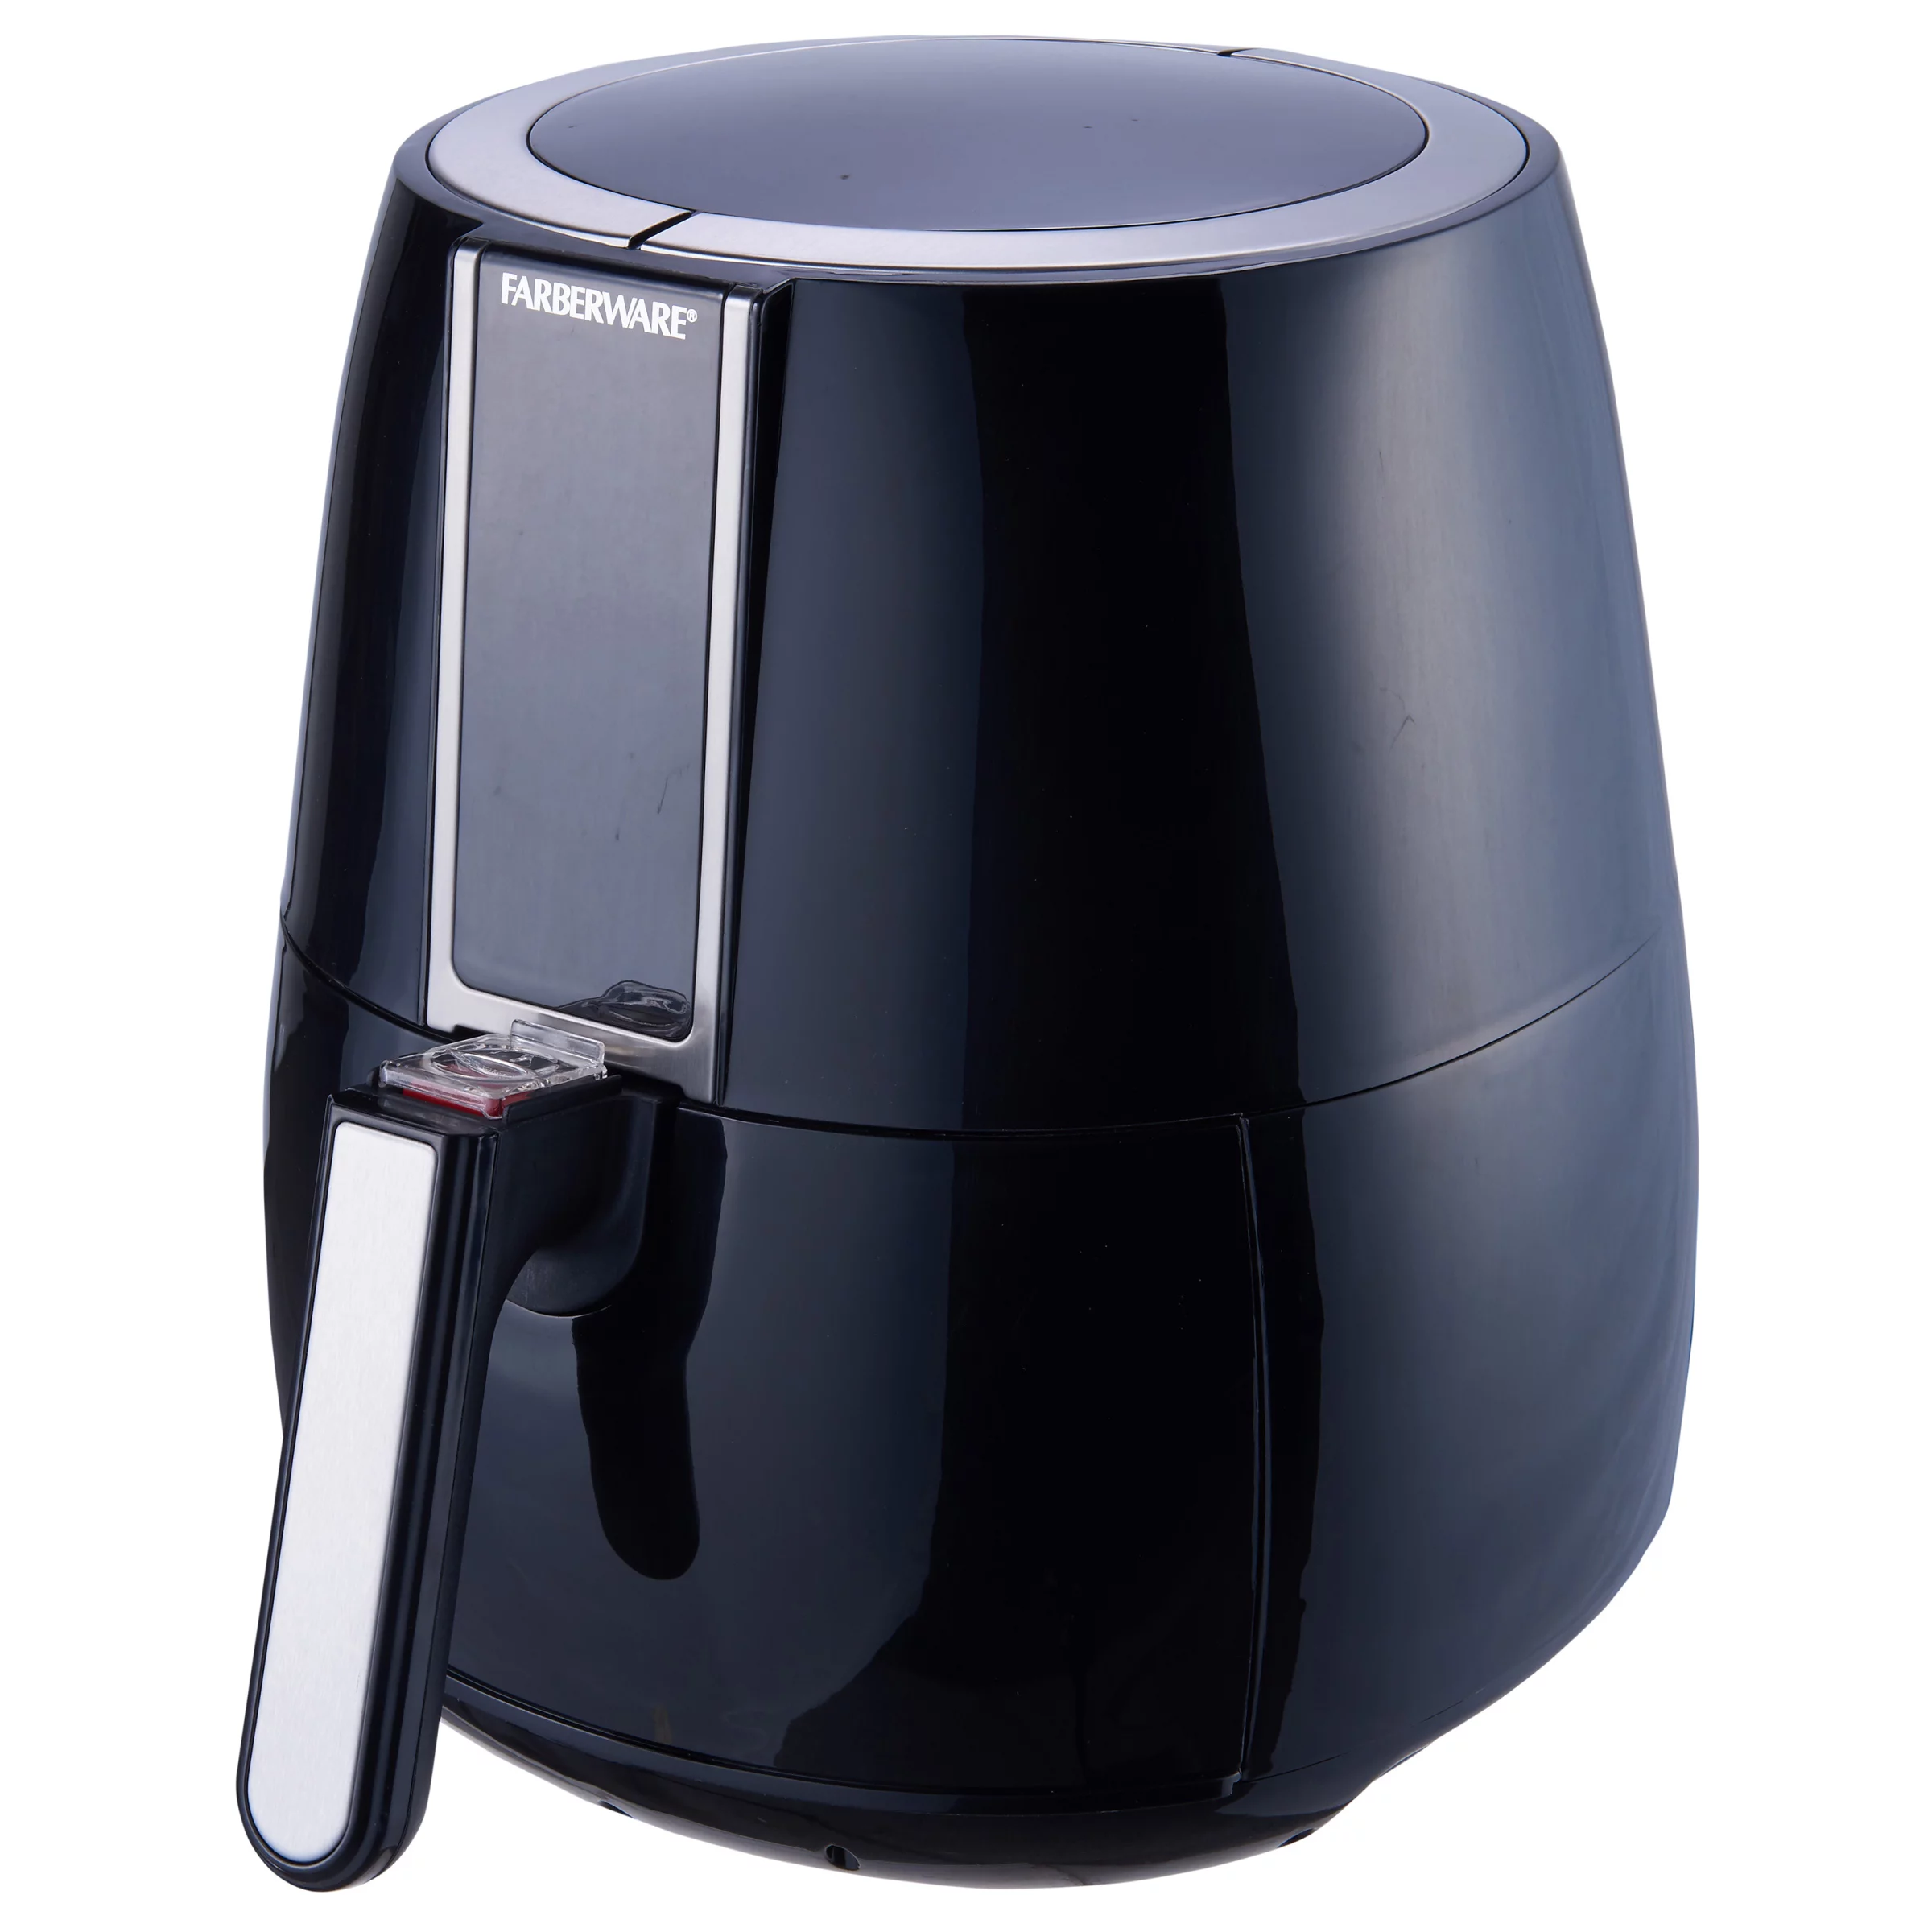 Farberware 3.2 Quart Digital Air Fryer, Oil-Less, Black 